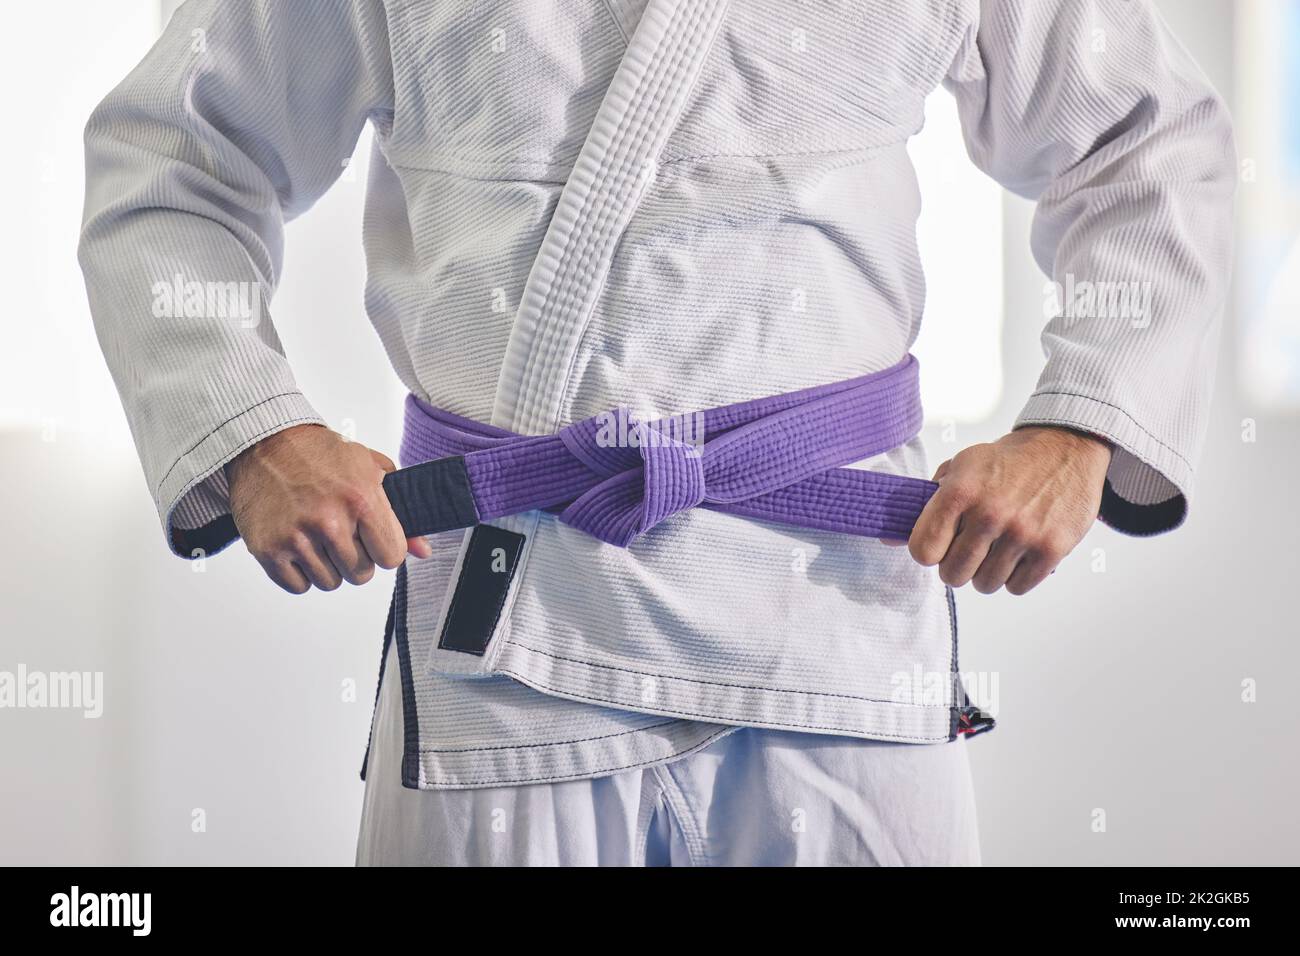 Cintura jiu jitsu immagini e fotografie stock ad alta risoluzione - Alamy